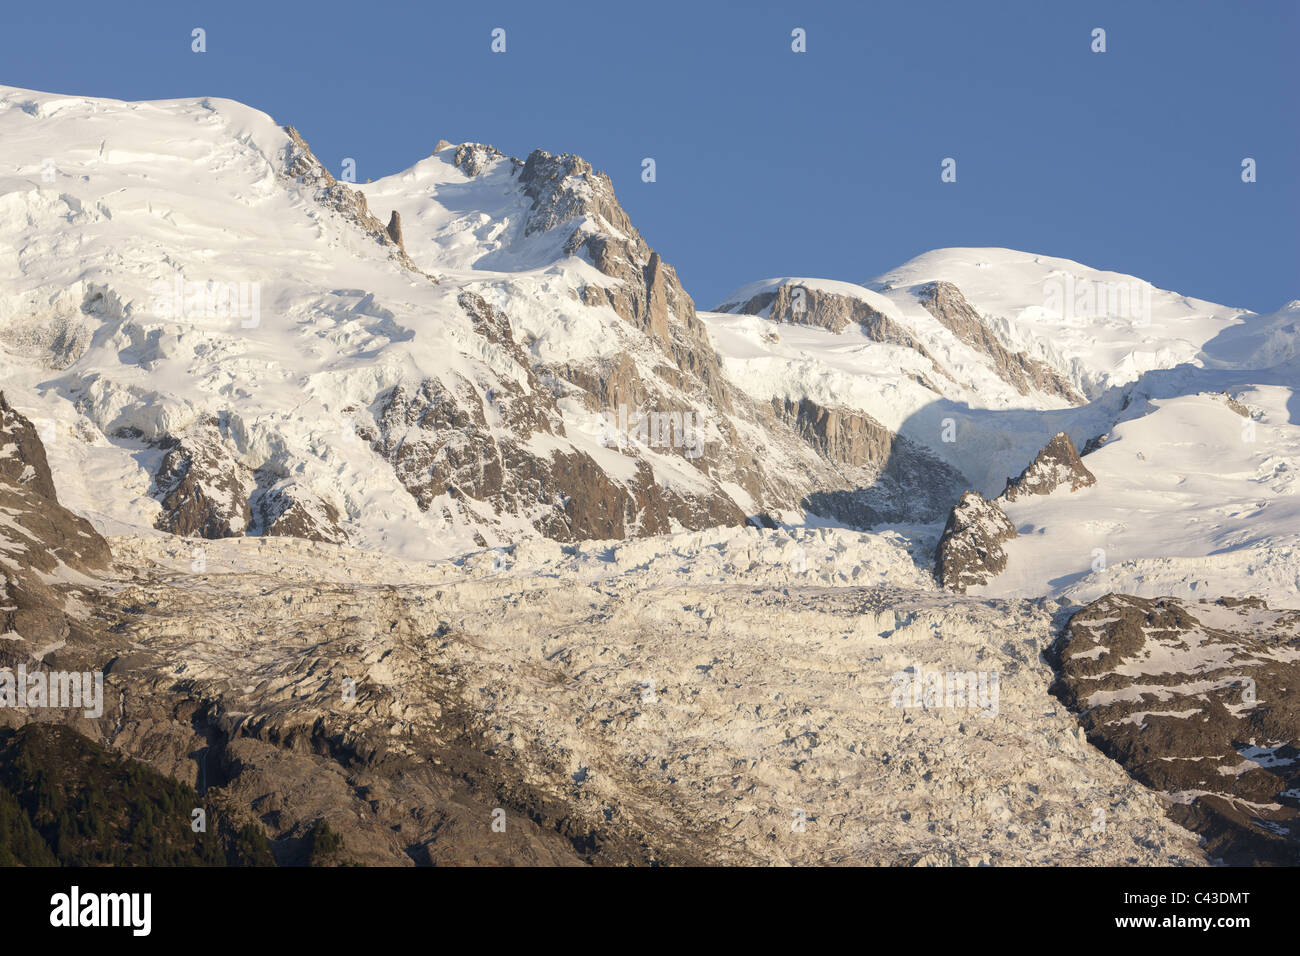 Lato settentrionale del Monte Bianco con il Glacier des Bossons (uno dei più ripidi del mondo). Chamonix, alta Savoia, Francia. Foto Stock